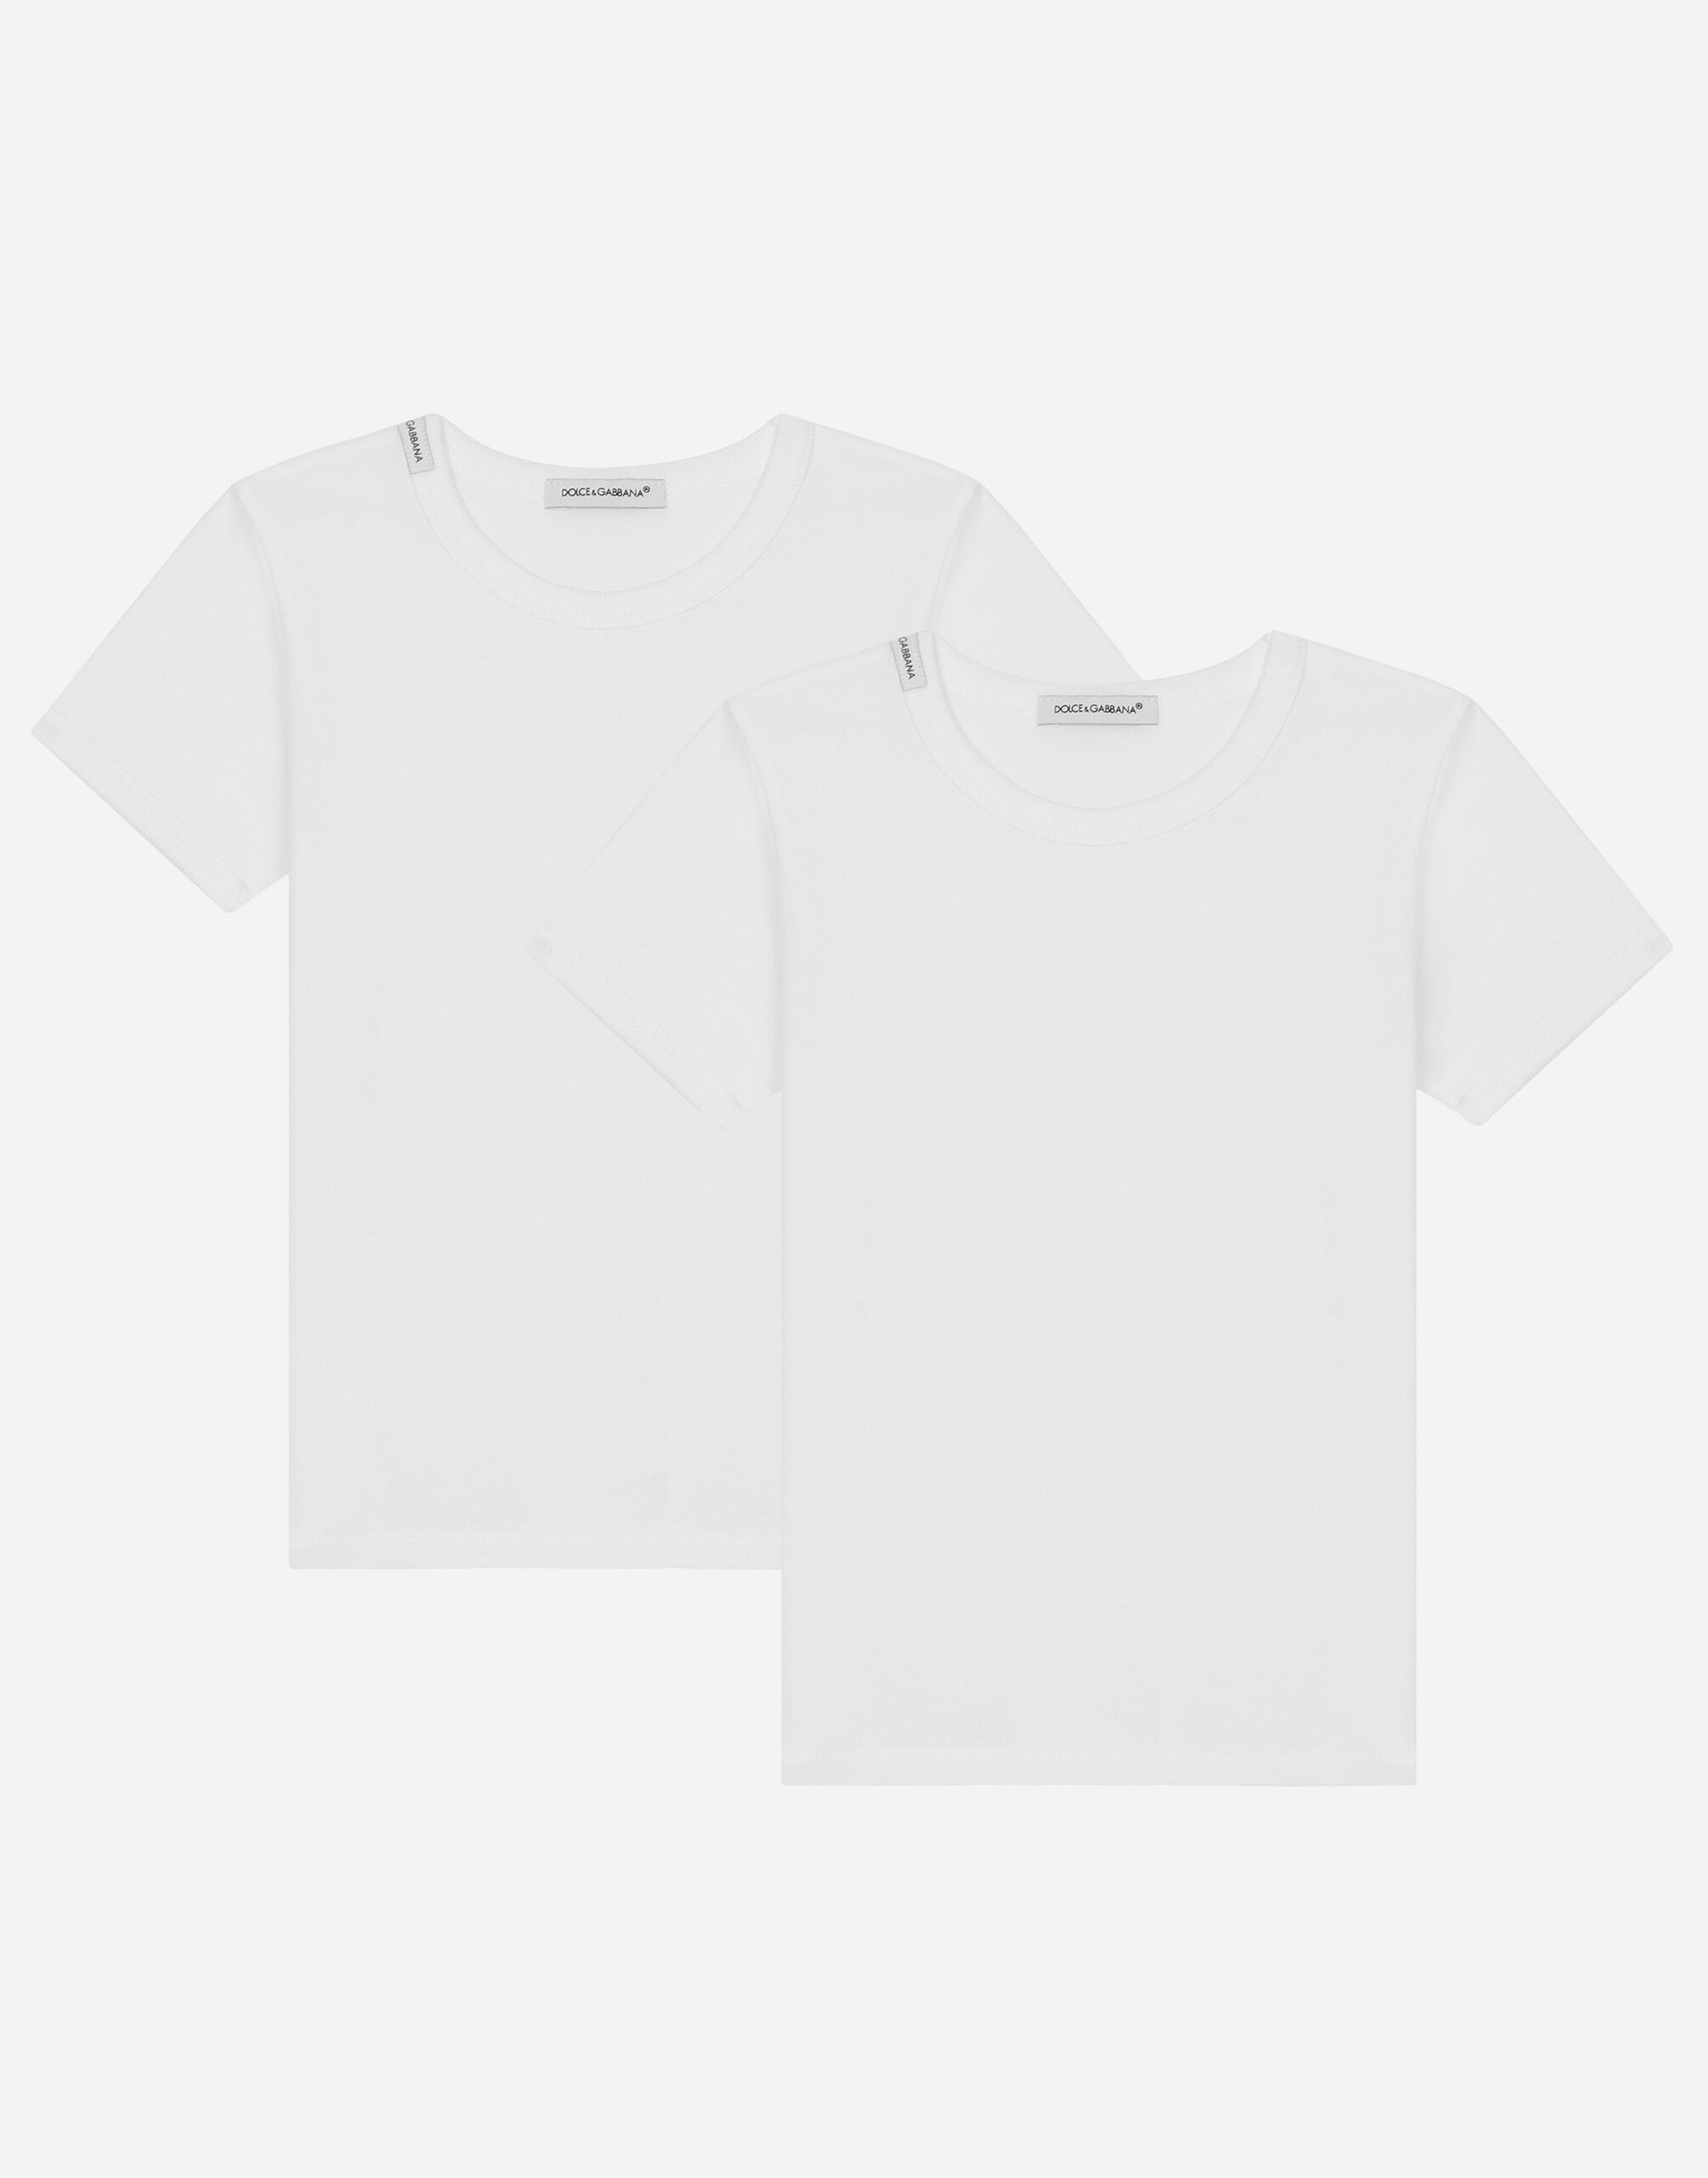 Dolce & Gabbana Bi-pack t-shirt manica corta in jersey Black L4J702G7OCU